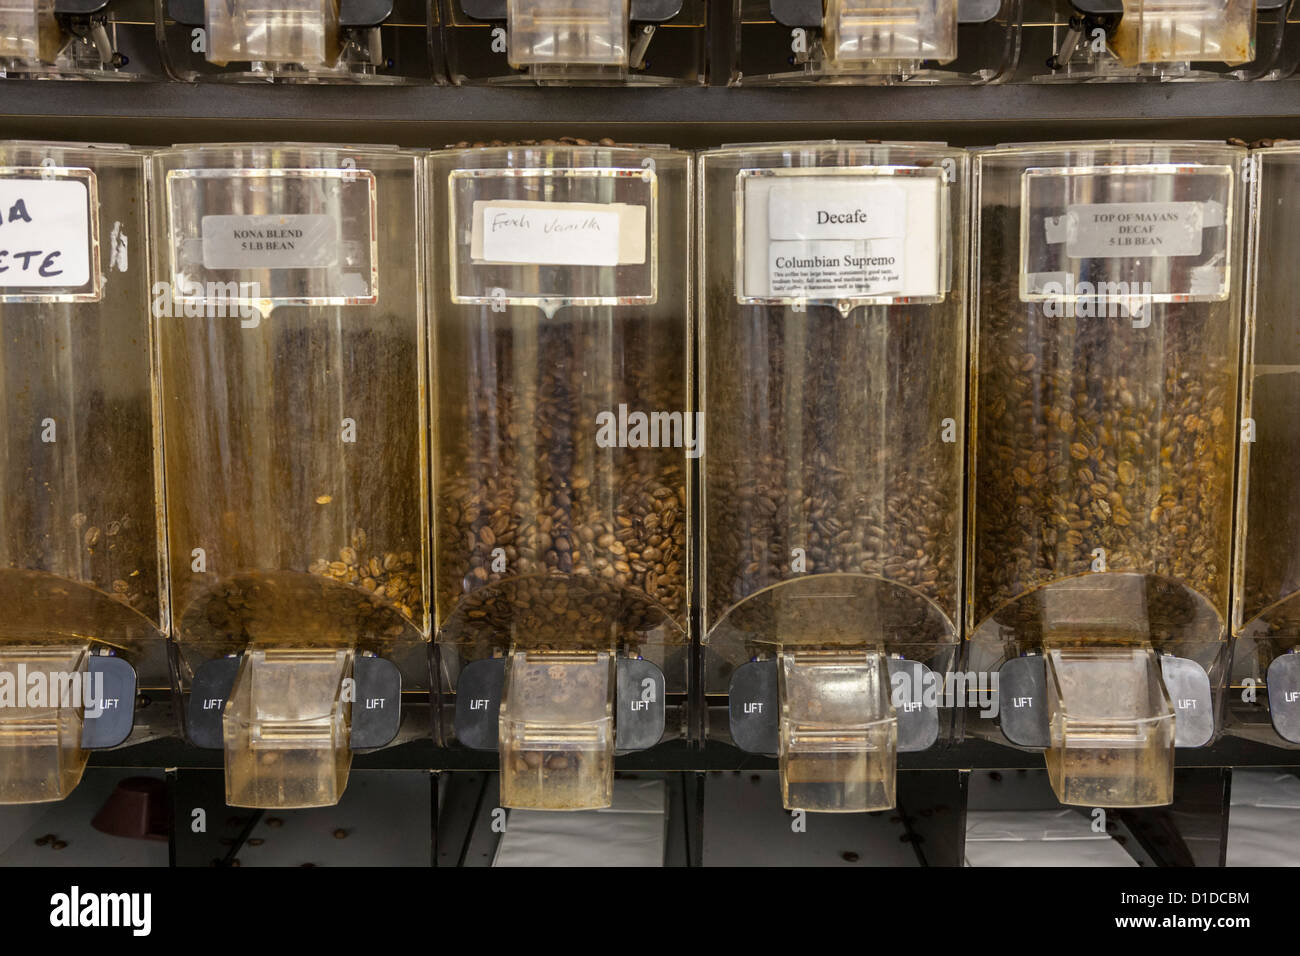 Distributeur de café avec plusieurs variétés de grains de café Banque D'Images